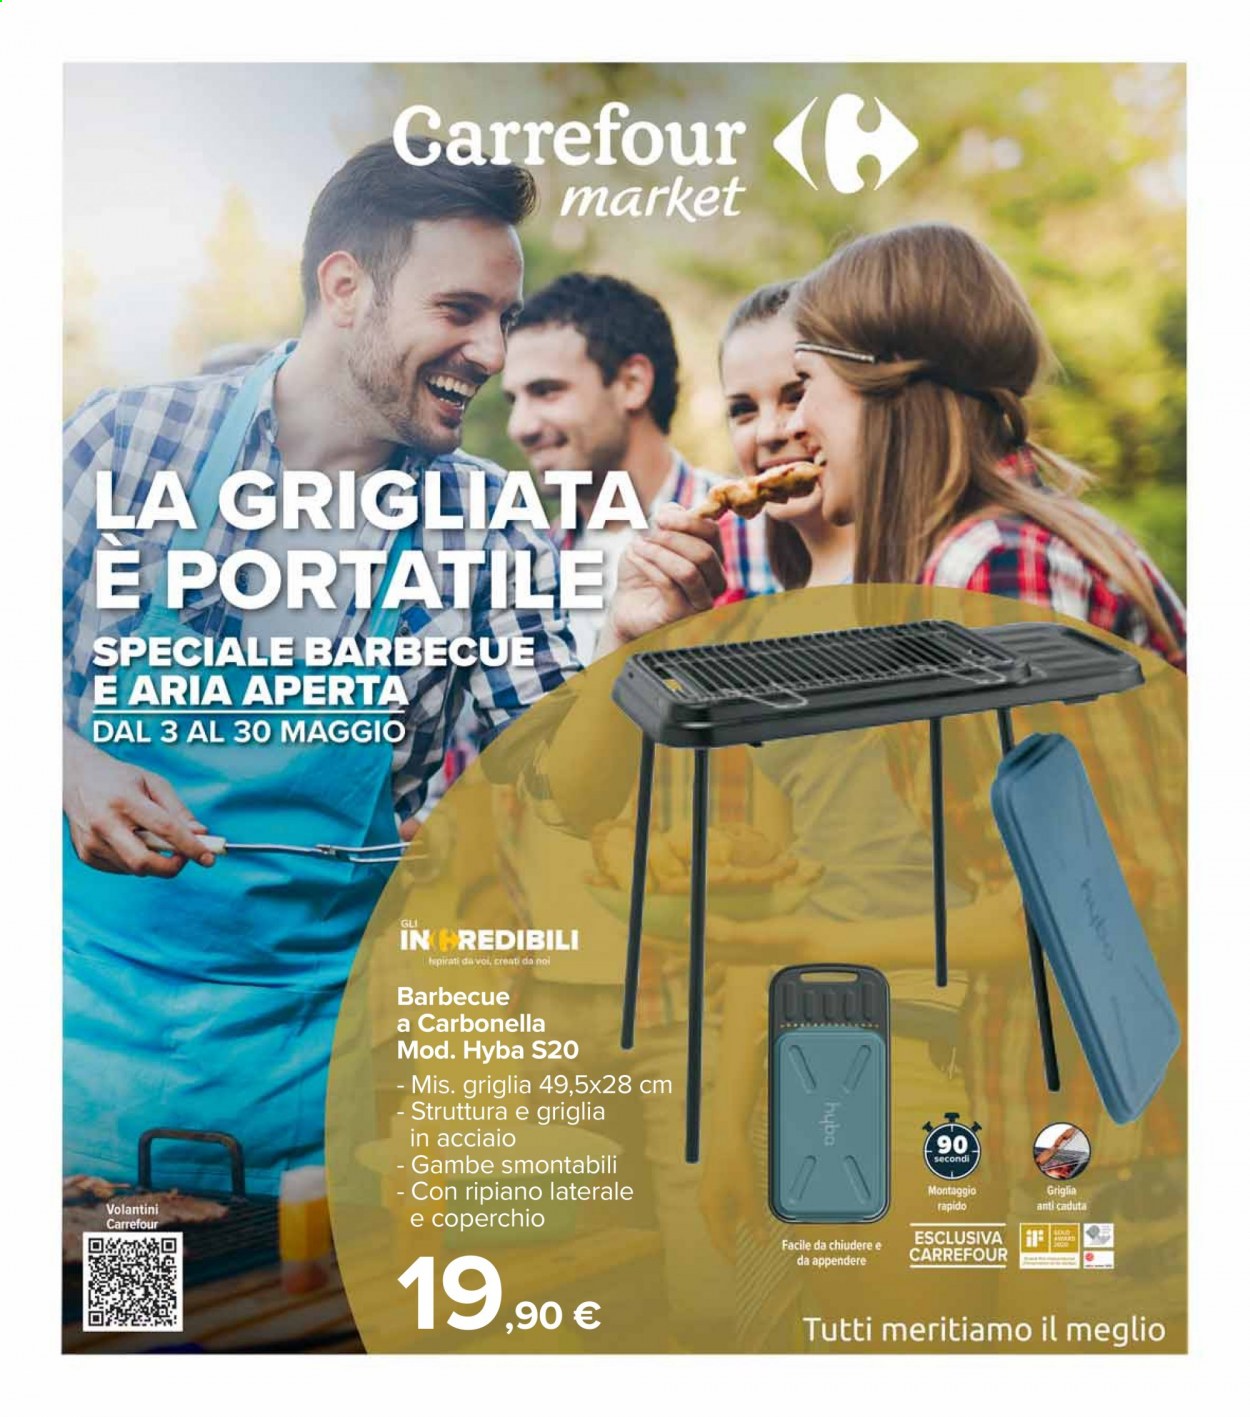 Volantino Carrefour - 3.5.2021 - 30.5.2021.